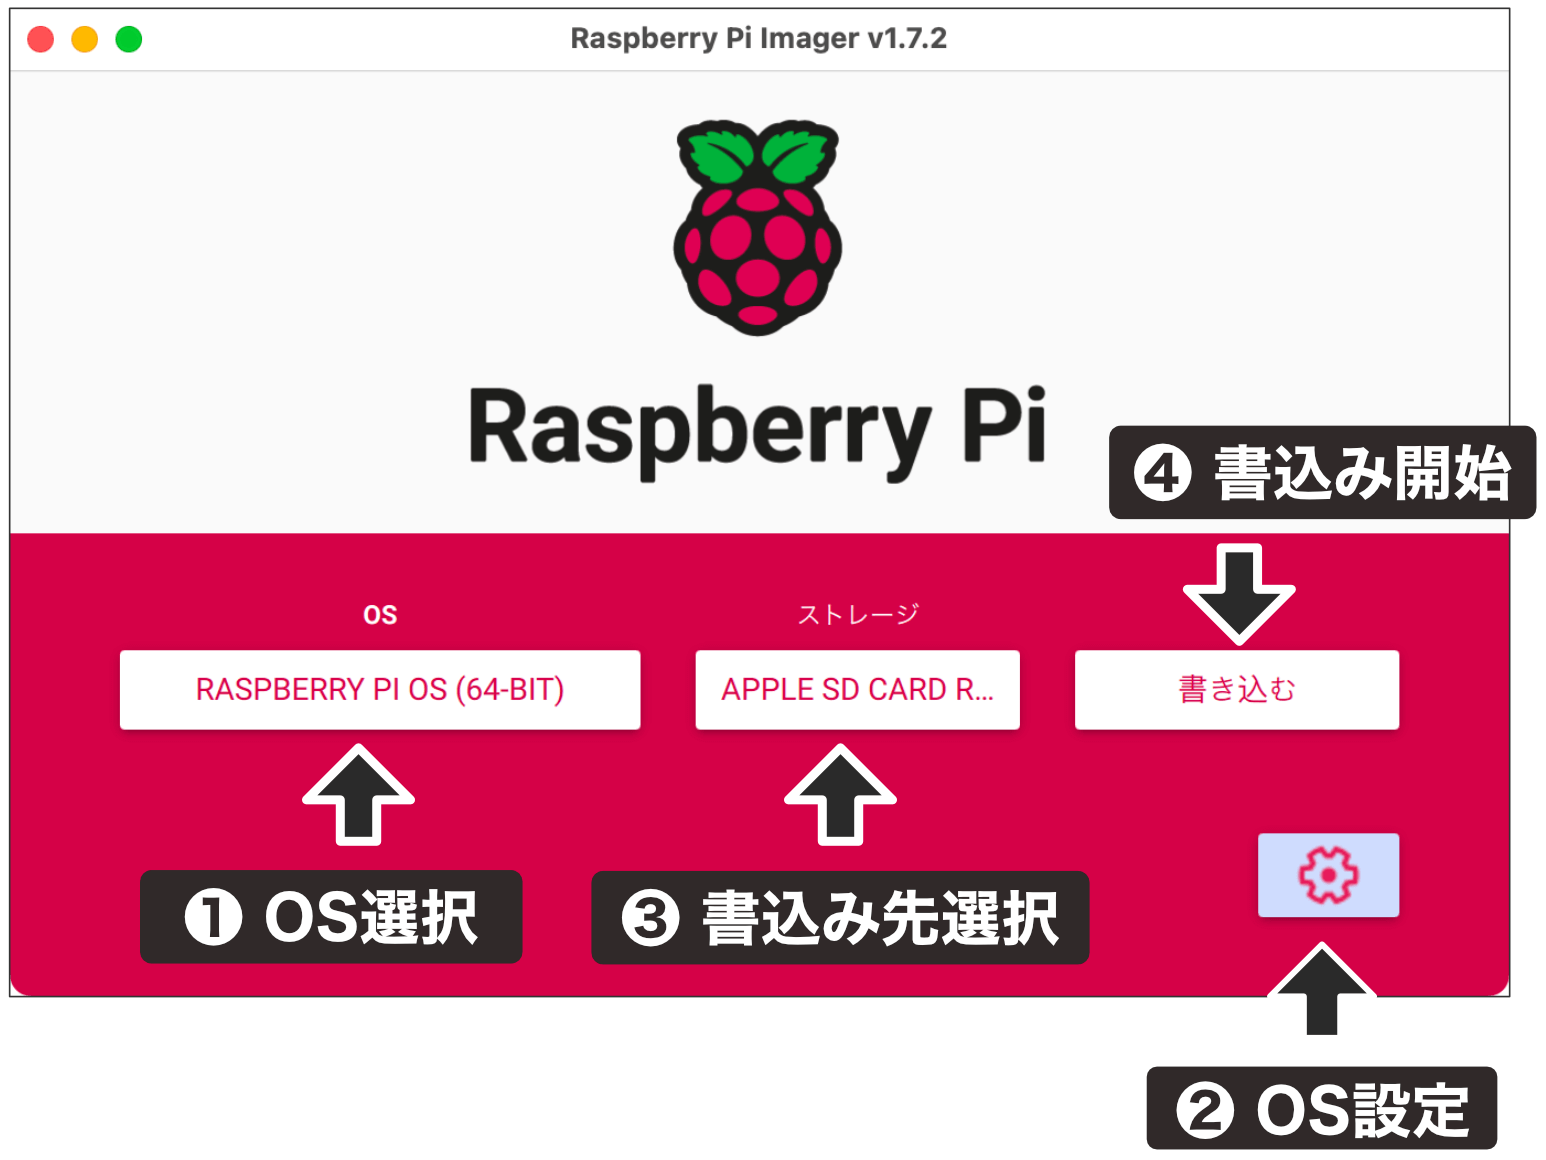 Raspberry Pi Imager 1